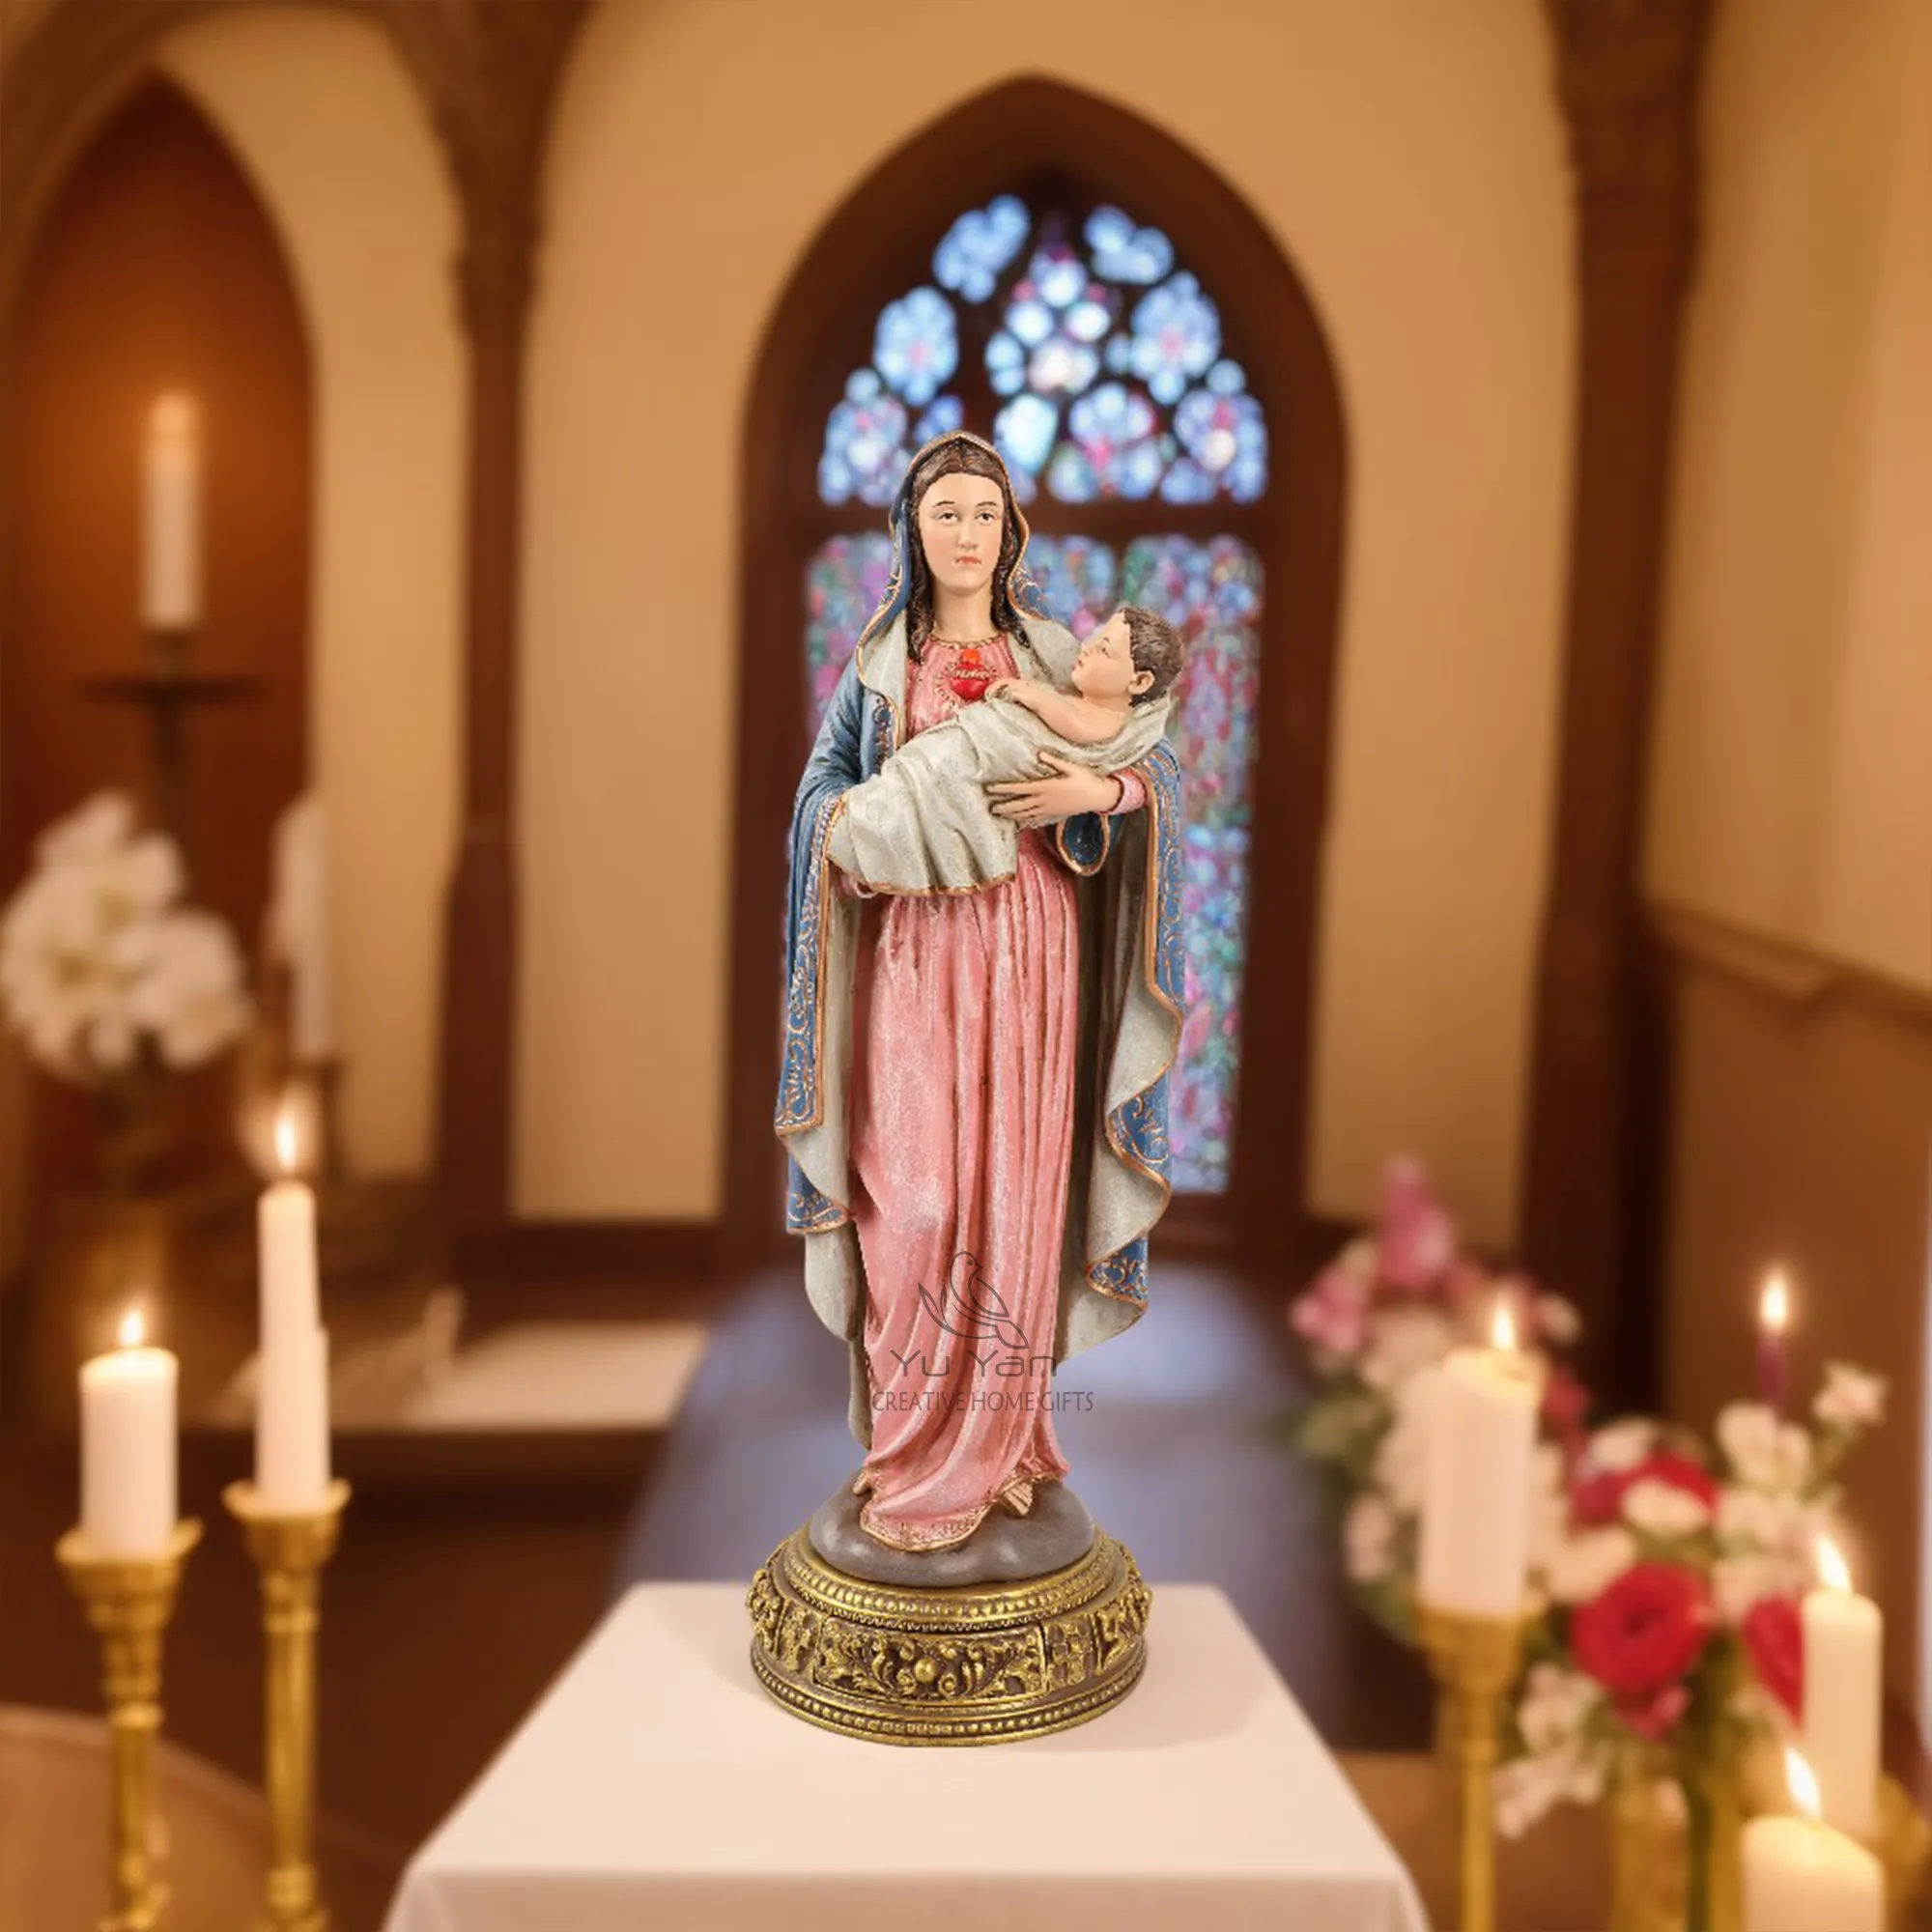 फैक्टरी थोक कैथोलिक धार्मिक मूर्तियां राल ईसाई वर्जिन मैरी पवित्र धार्मिक चमकदार सेक्विन घर की सजावट के लिए दिखाई दीं